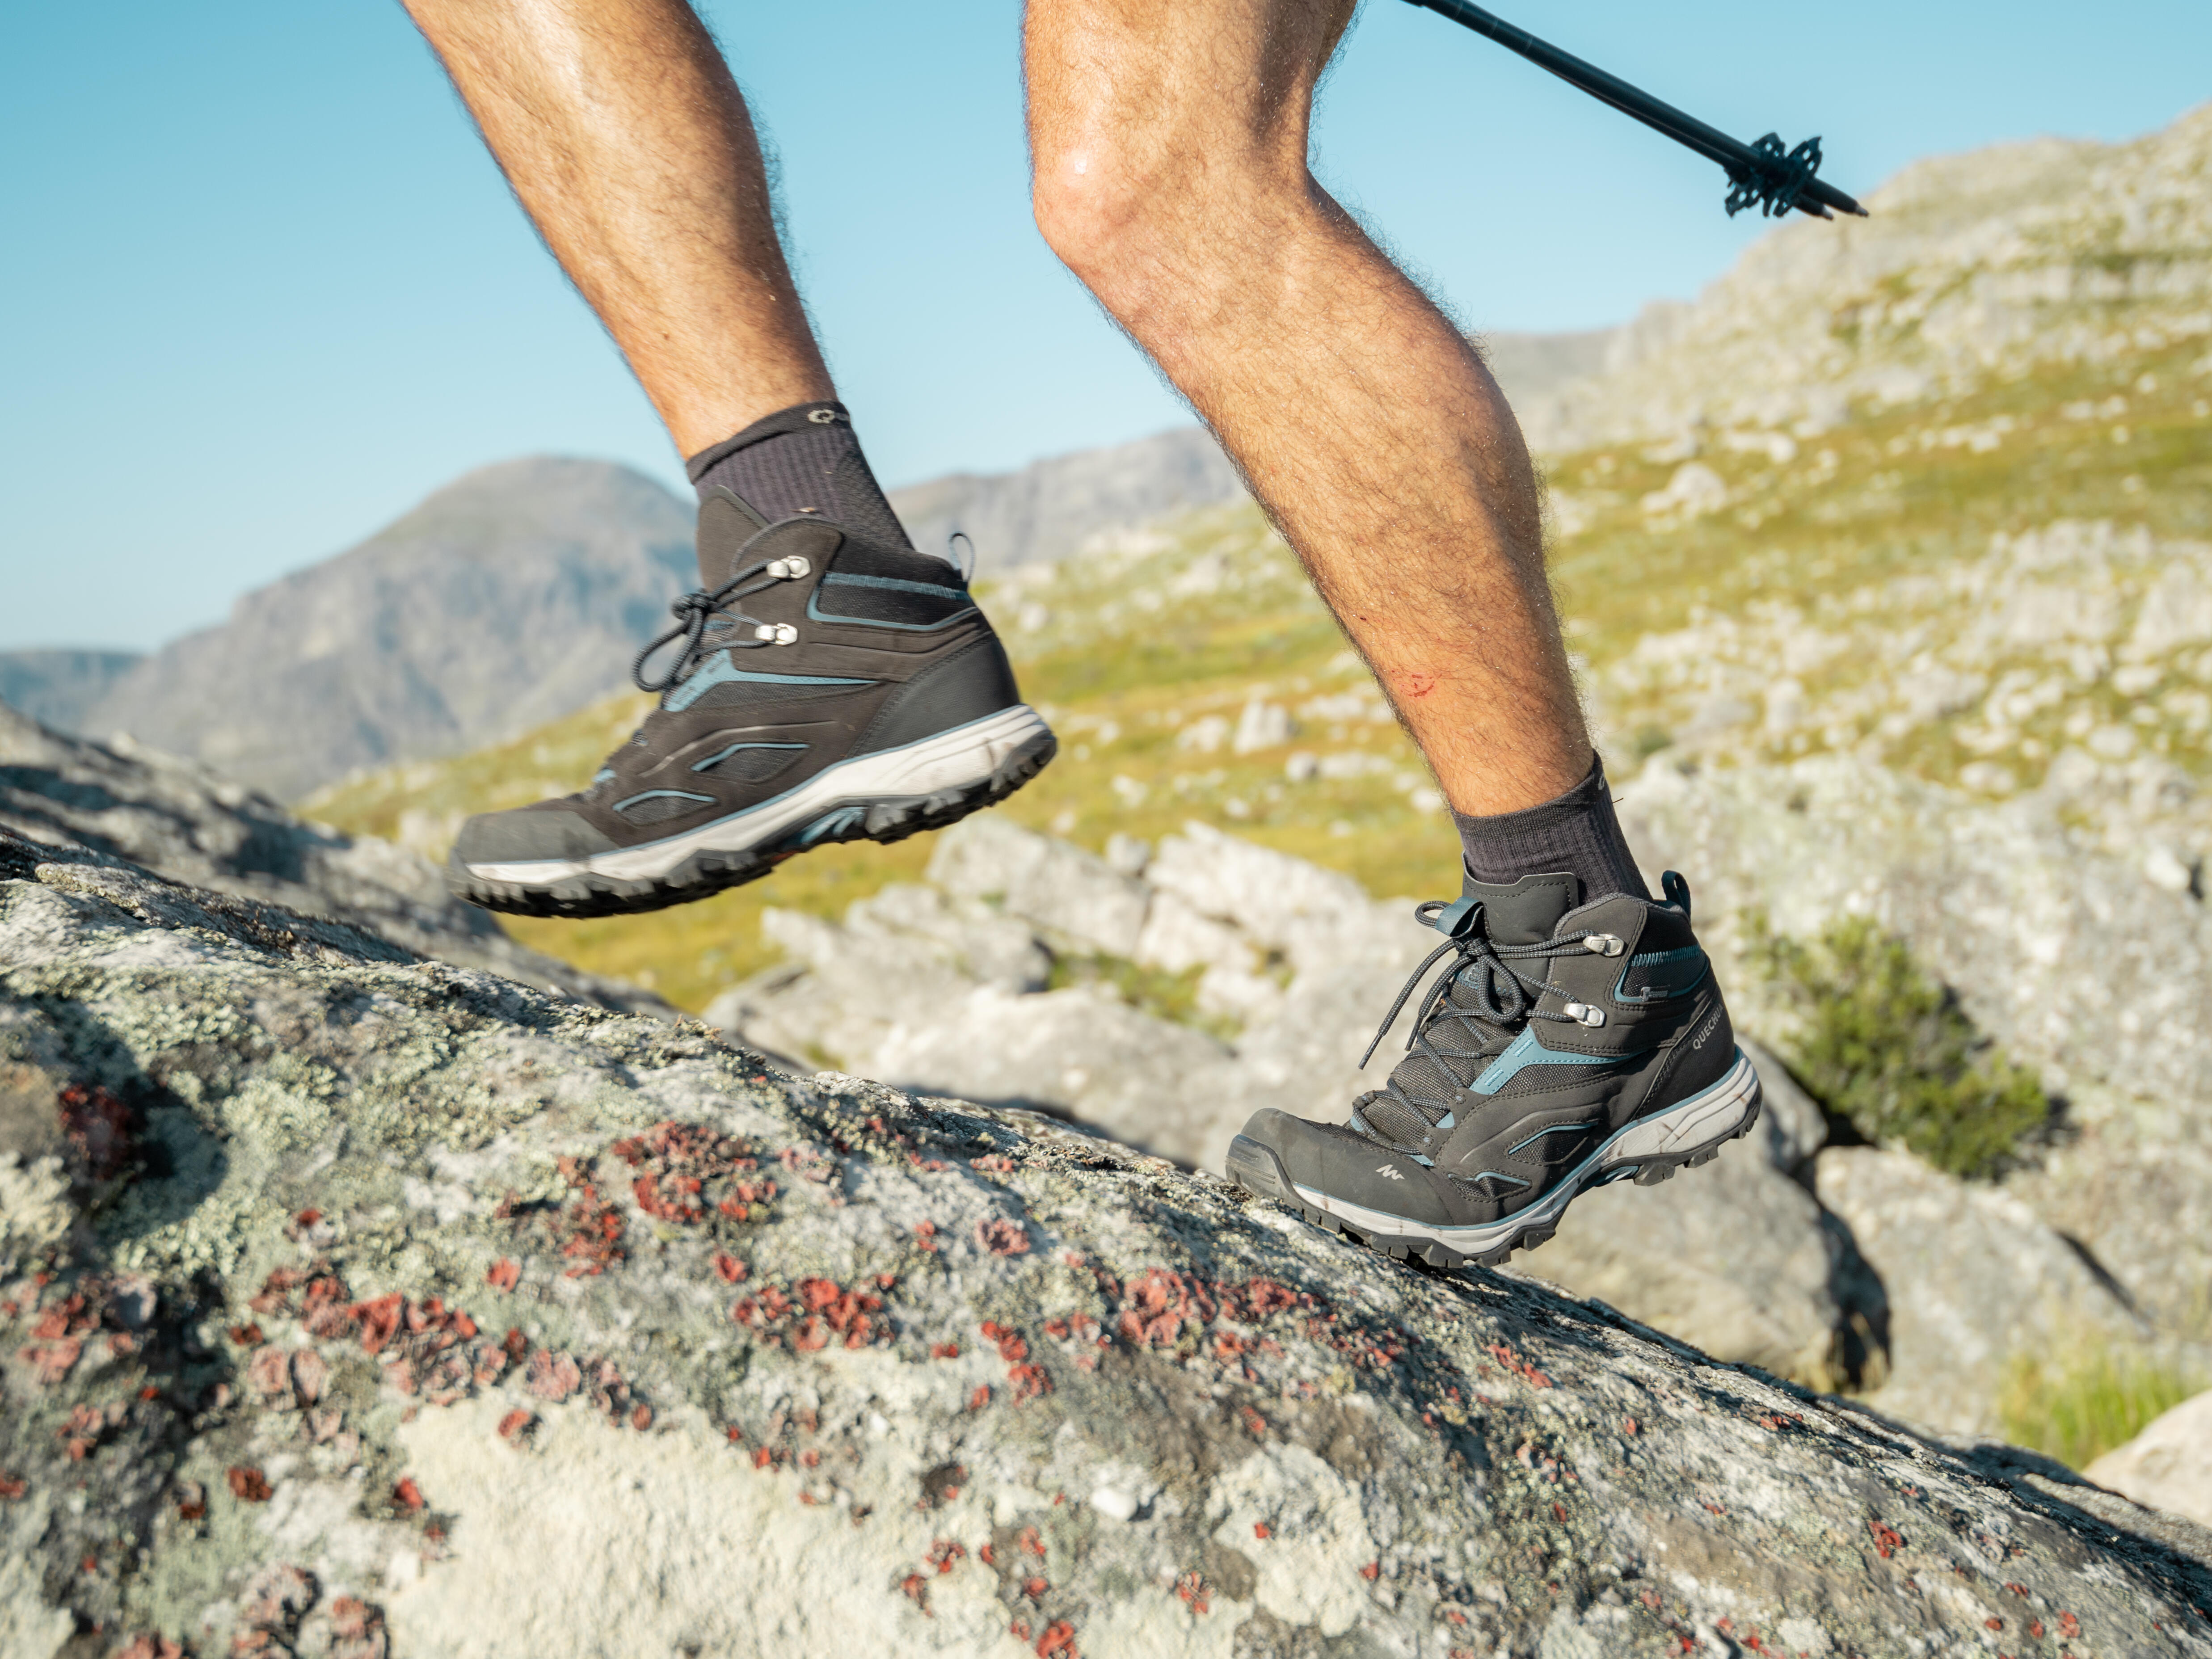 Comment choisir ses crampons pour la randonnée en montagne ?